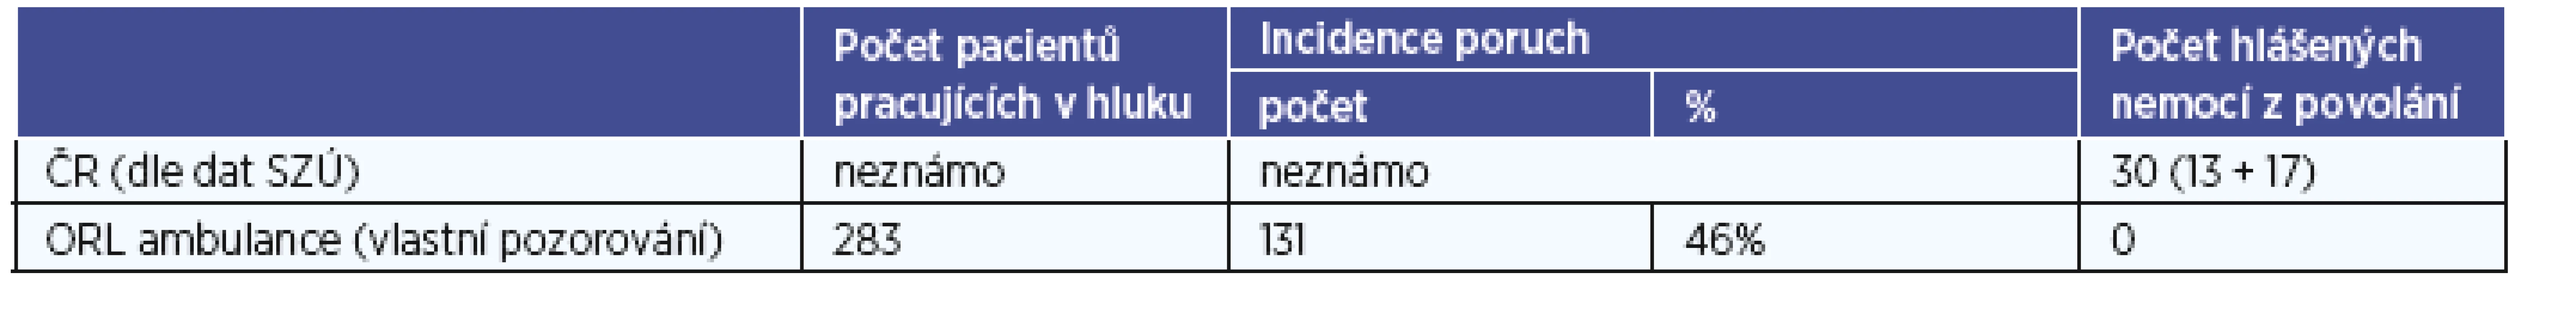 Porovnání incidence poruch a hlášených nemocí z povolání v ČR a ORL ambulanci za dobu vlastního pozorování.